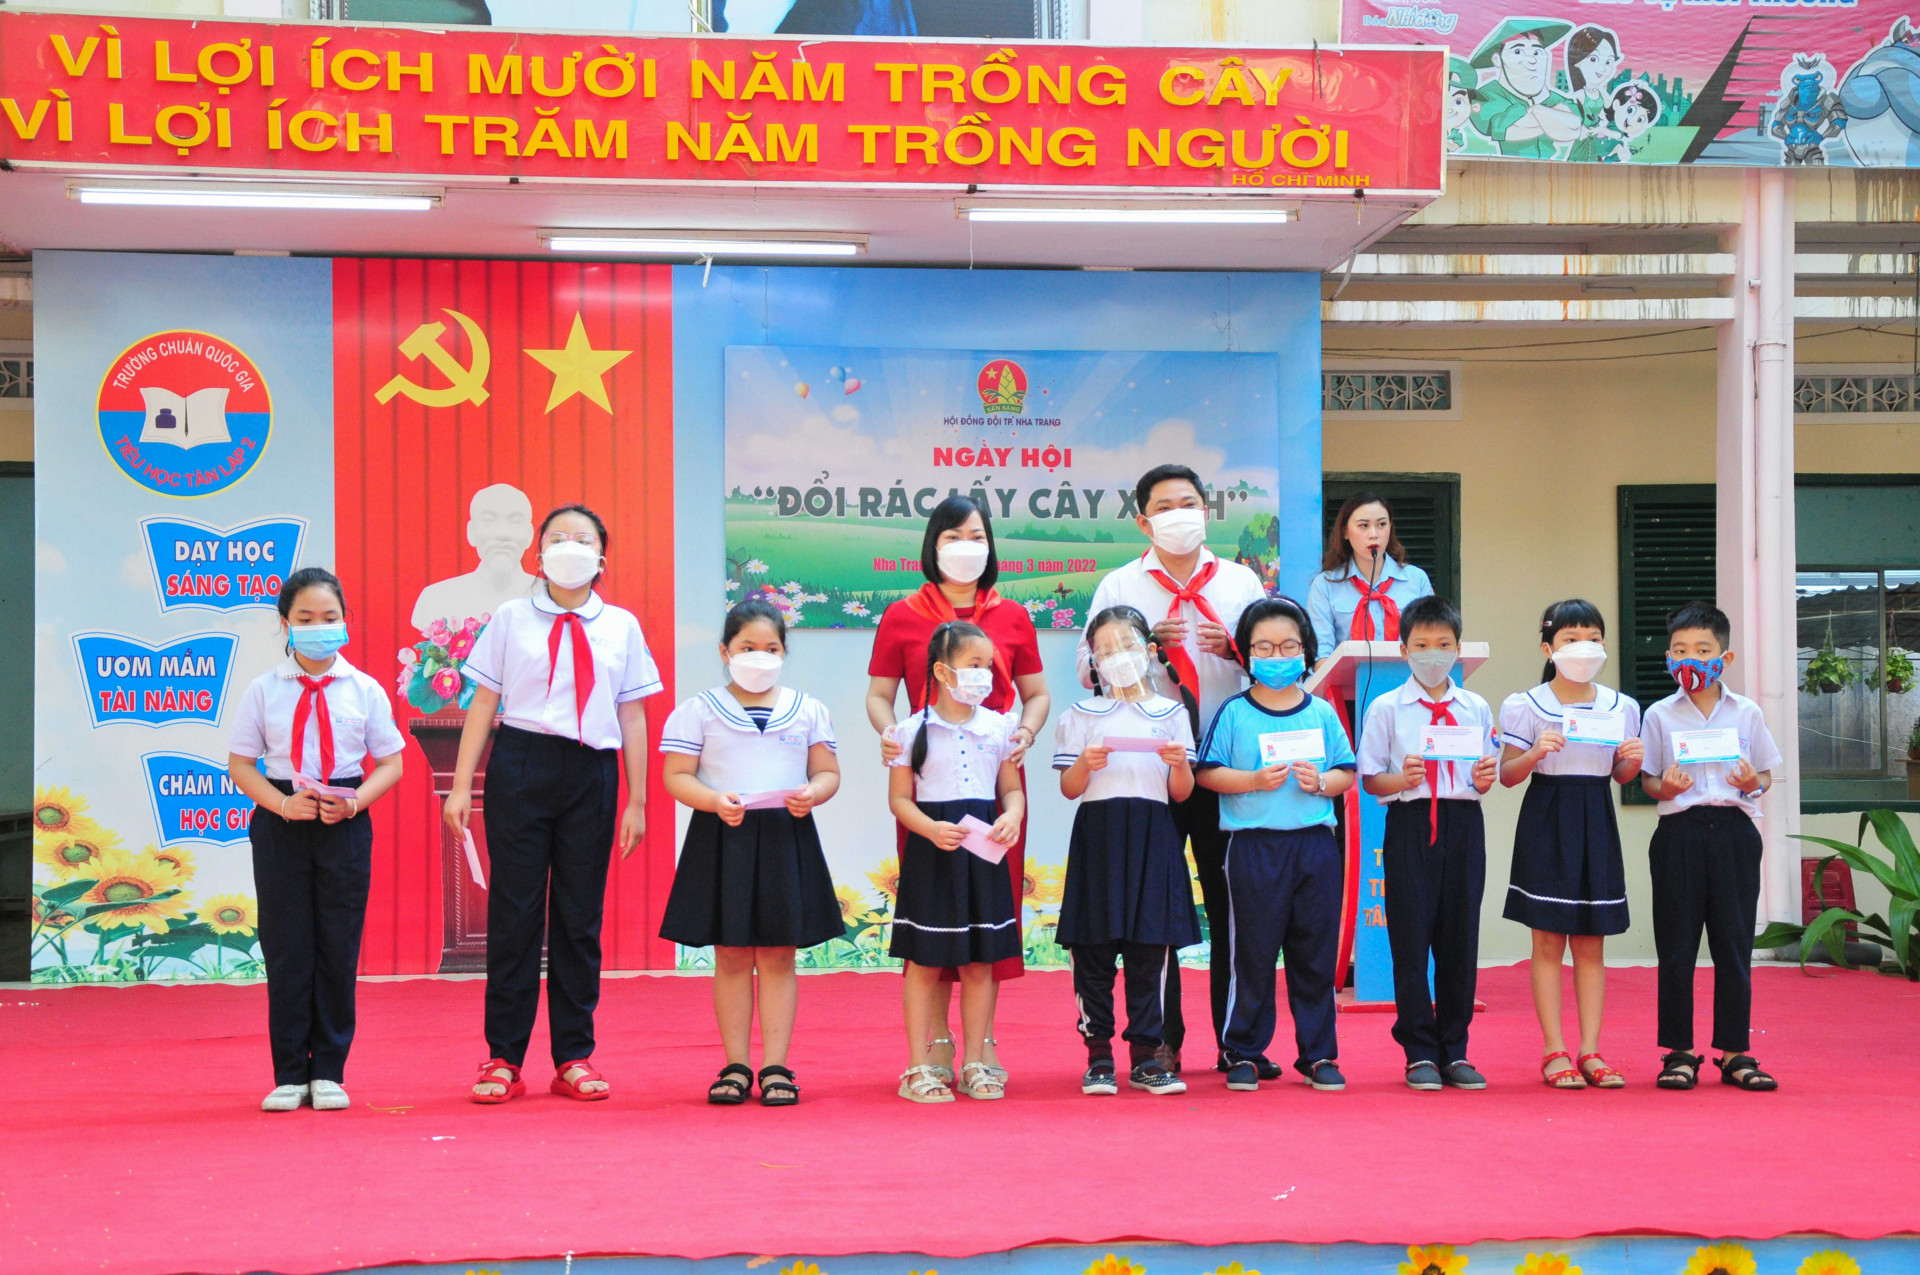 Dịp này, Hội đồng Đội TP. Nha Trang trao 10 suất học bổng trị giá 500.000 đồng/suất cho các học sinh có hoàn cảnh khó khăn của trường